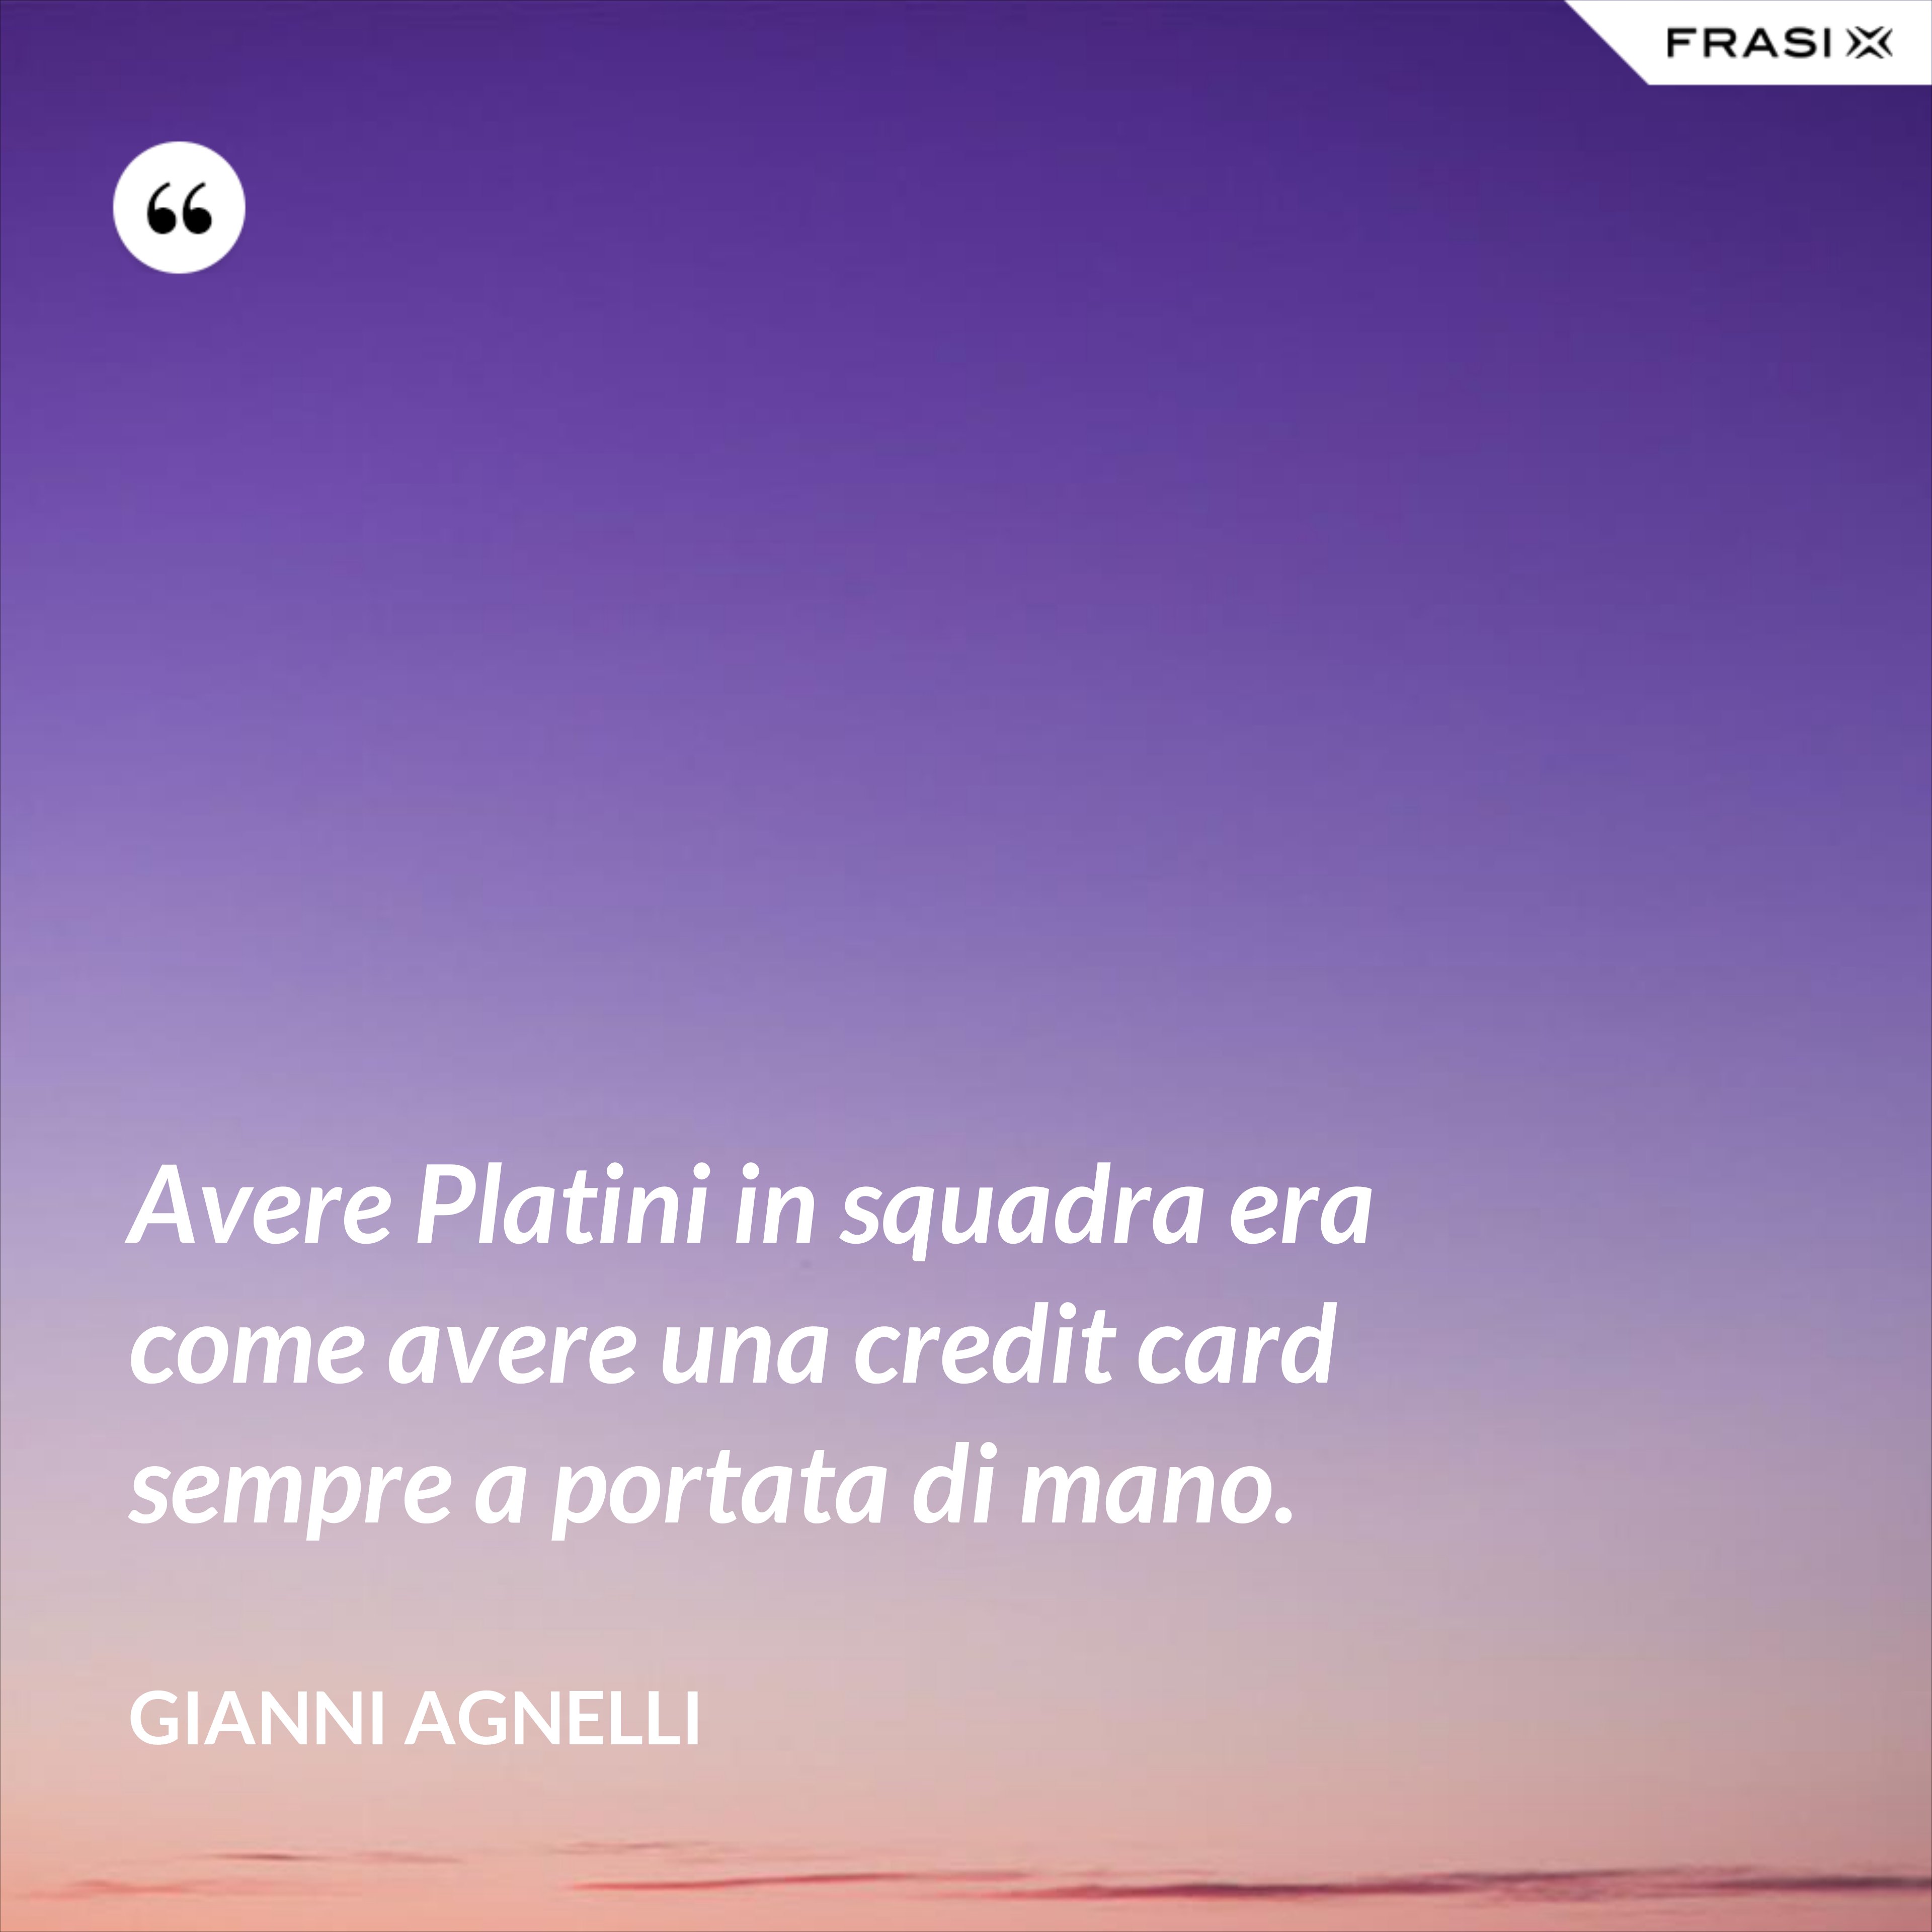 Avere Platini in squadra era come avere una credit card sempre a portata di mano. - Gianni Agnelli